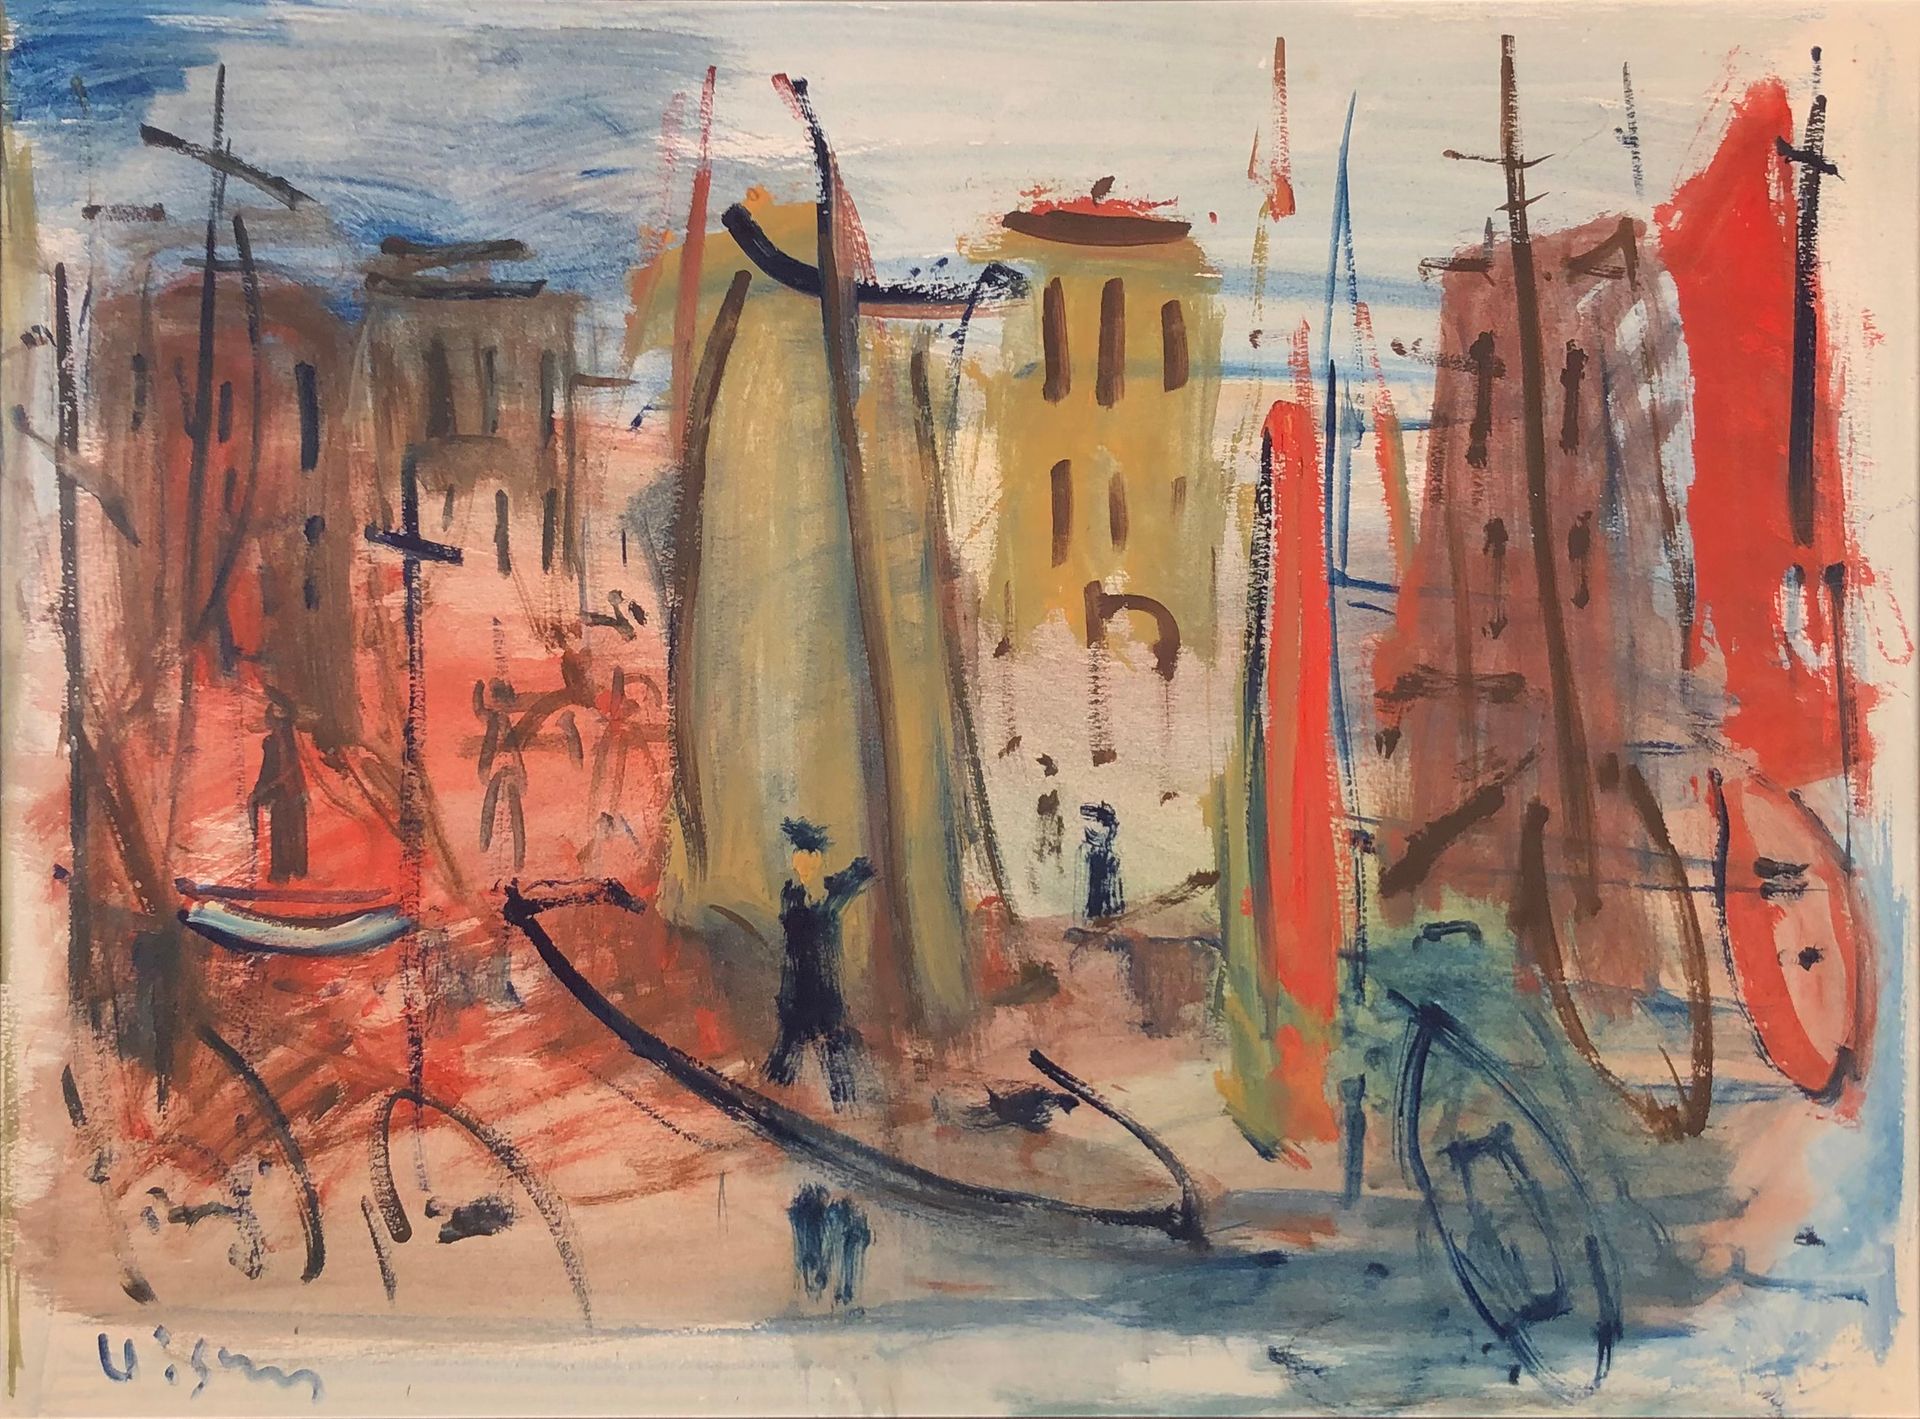 Null 西尔万-维尼 (1903-1970)

帆船。

水彩画，左下角有签名。

视图：39 x 54 cm